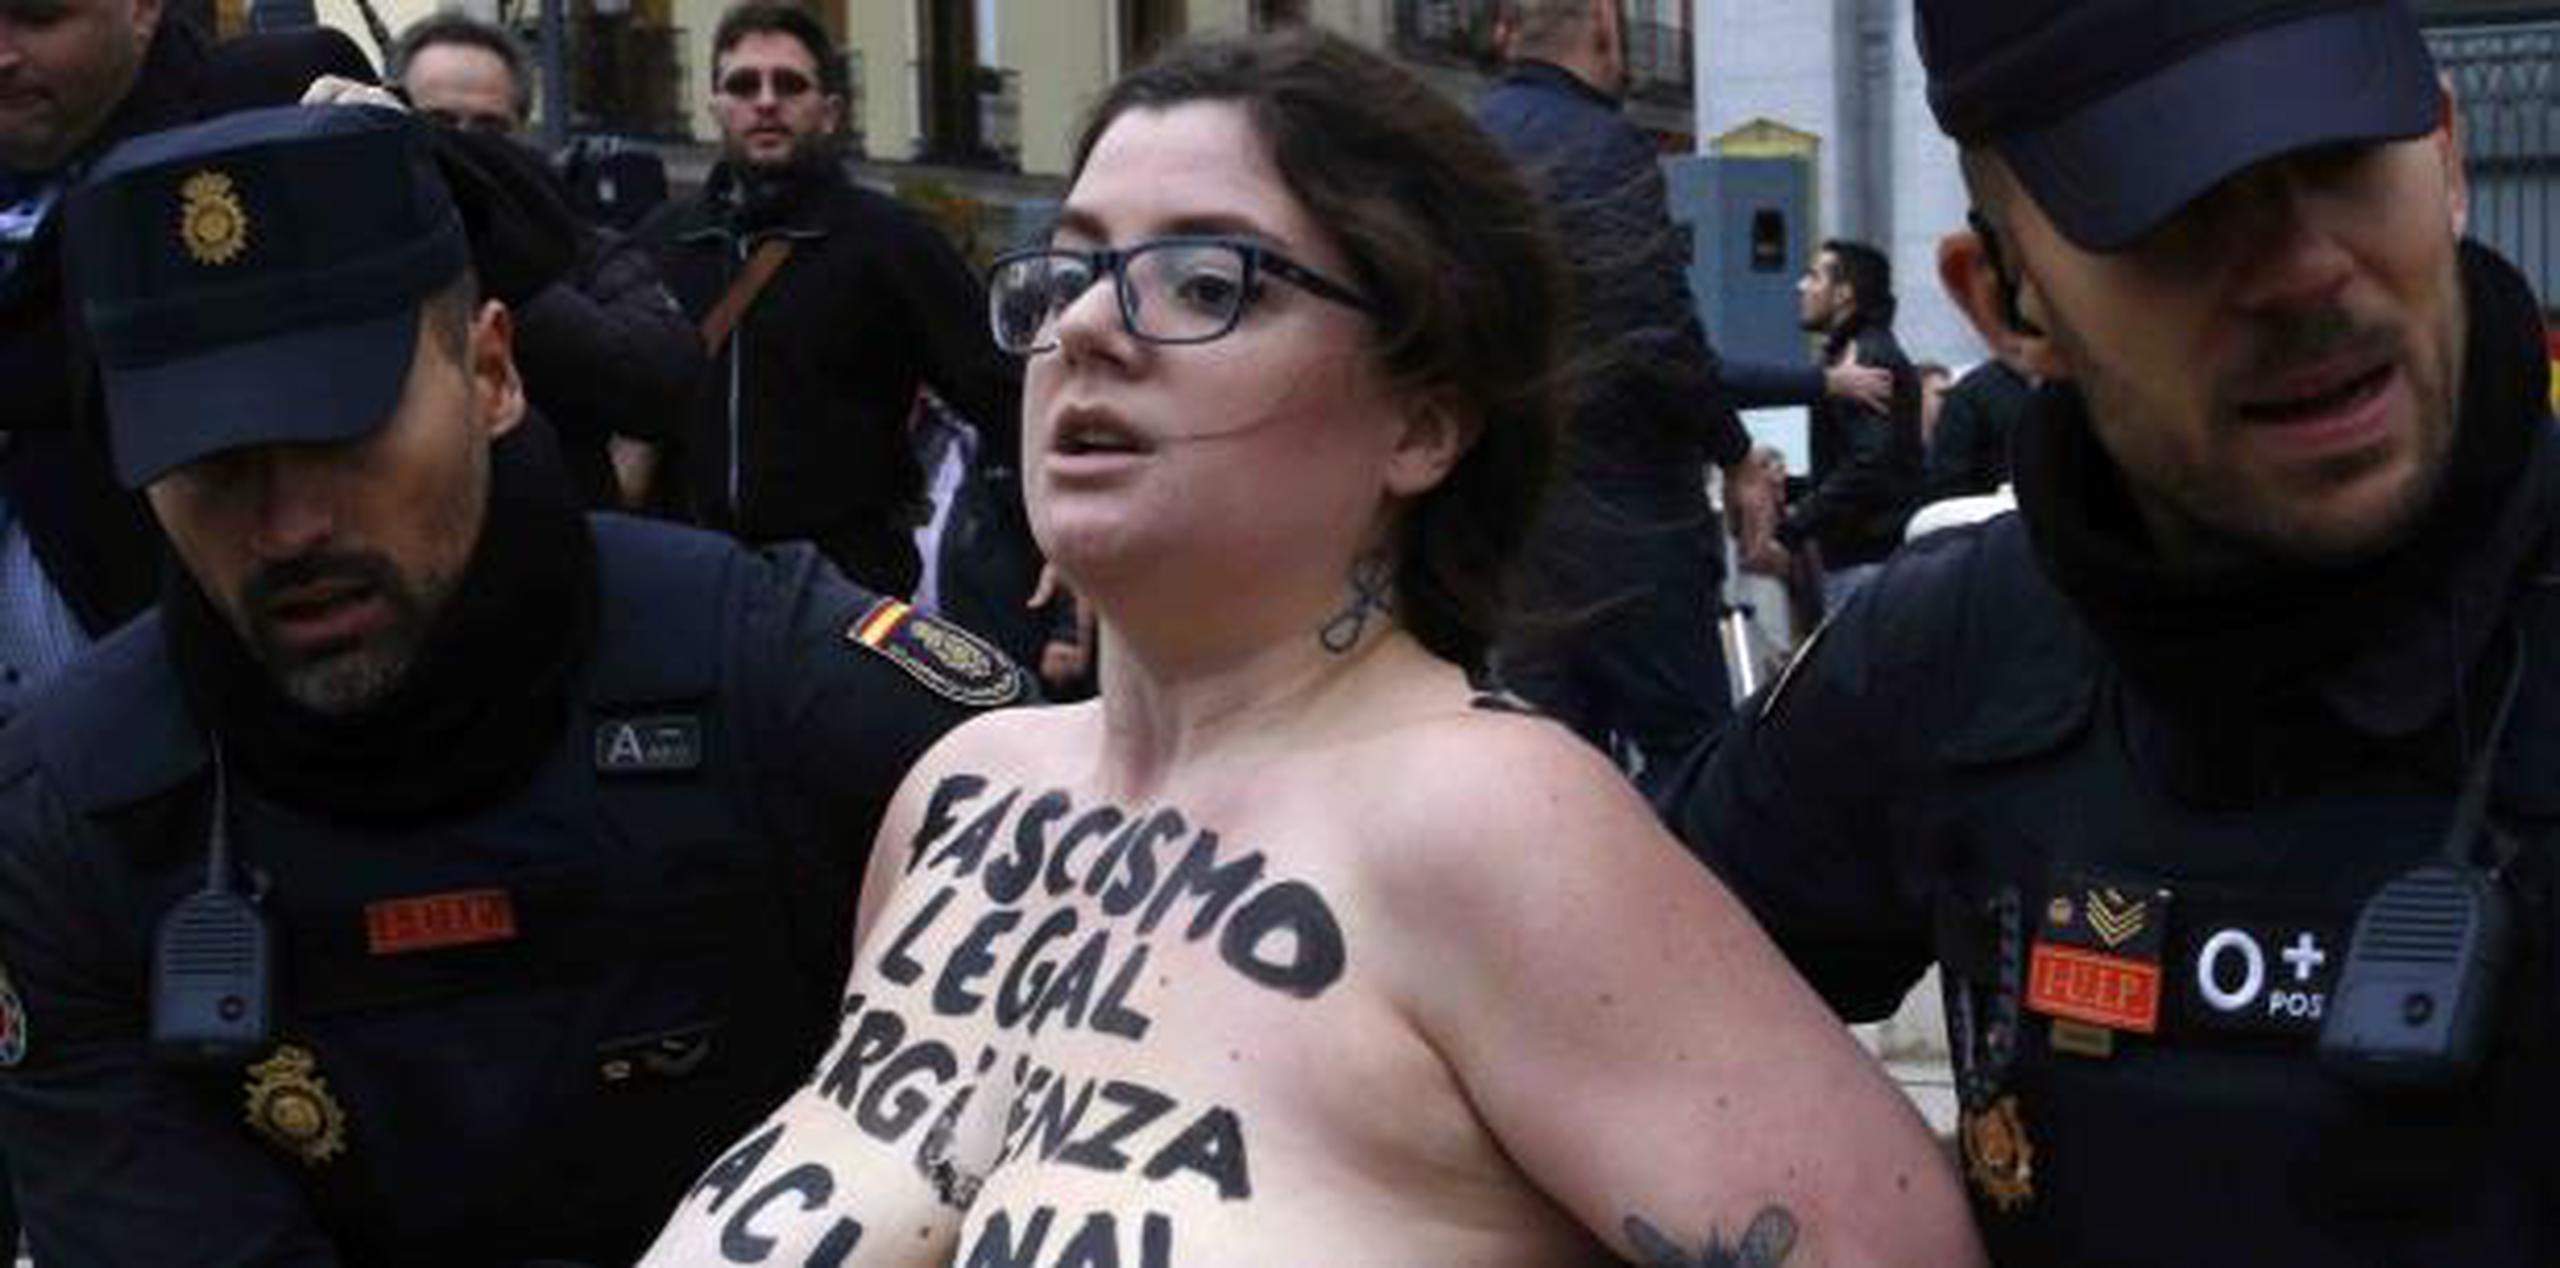 Agentes mantuvieron alejadas de los 200 asistentes al acto a tres miembros del grupo Femen, que irrumpieron con el pecho desnudo y la leyenda “Fascismo legal, vergüenza nacional” pintada en el torso.  (AP)

